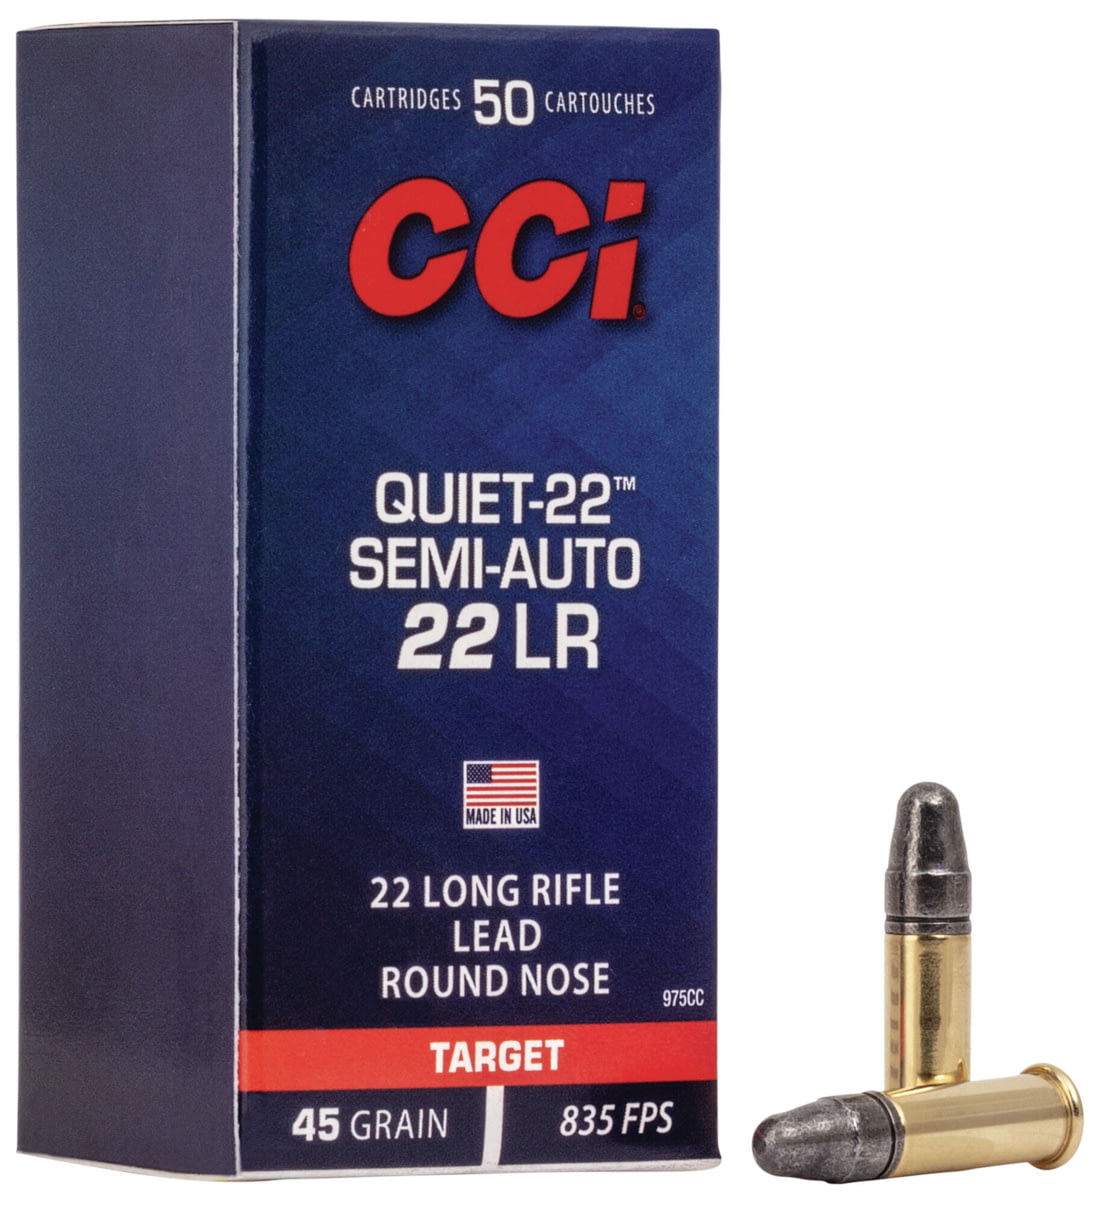 CCI Ammunition Quiet-22 Semi-Auto .22 Long Rifle 45 grain Soft Point Rimfire Ammunition